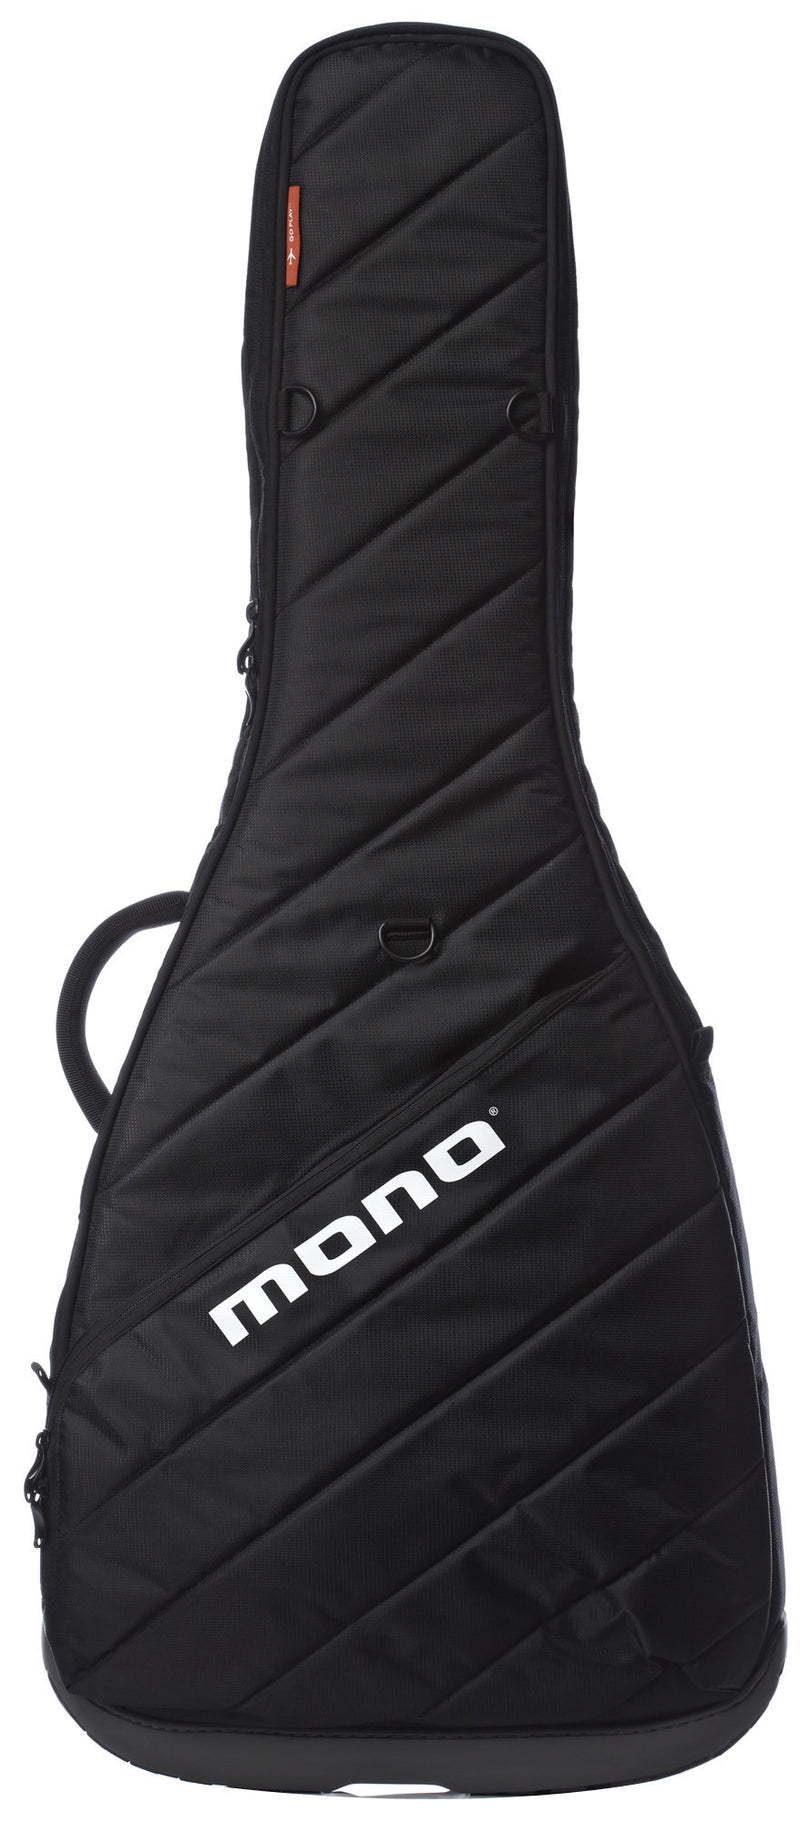 Mono M80 Vertigo Gig Bag for Semi-Hollow Electric Guitars